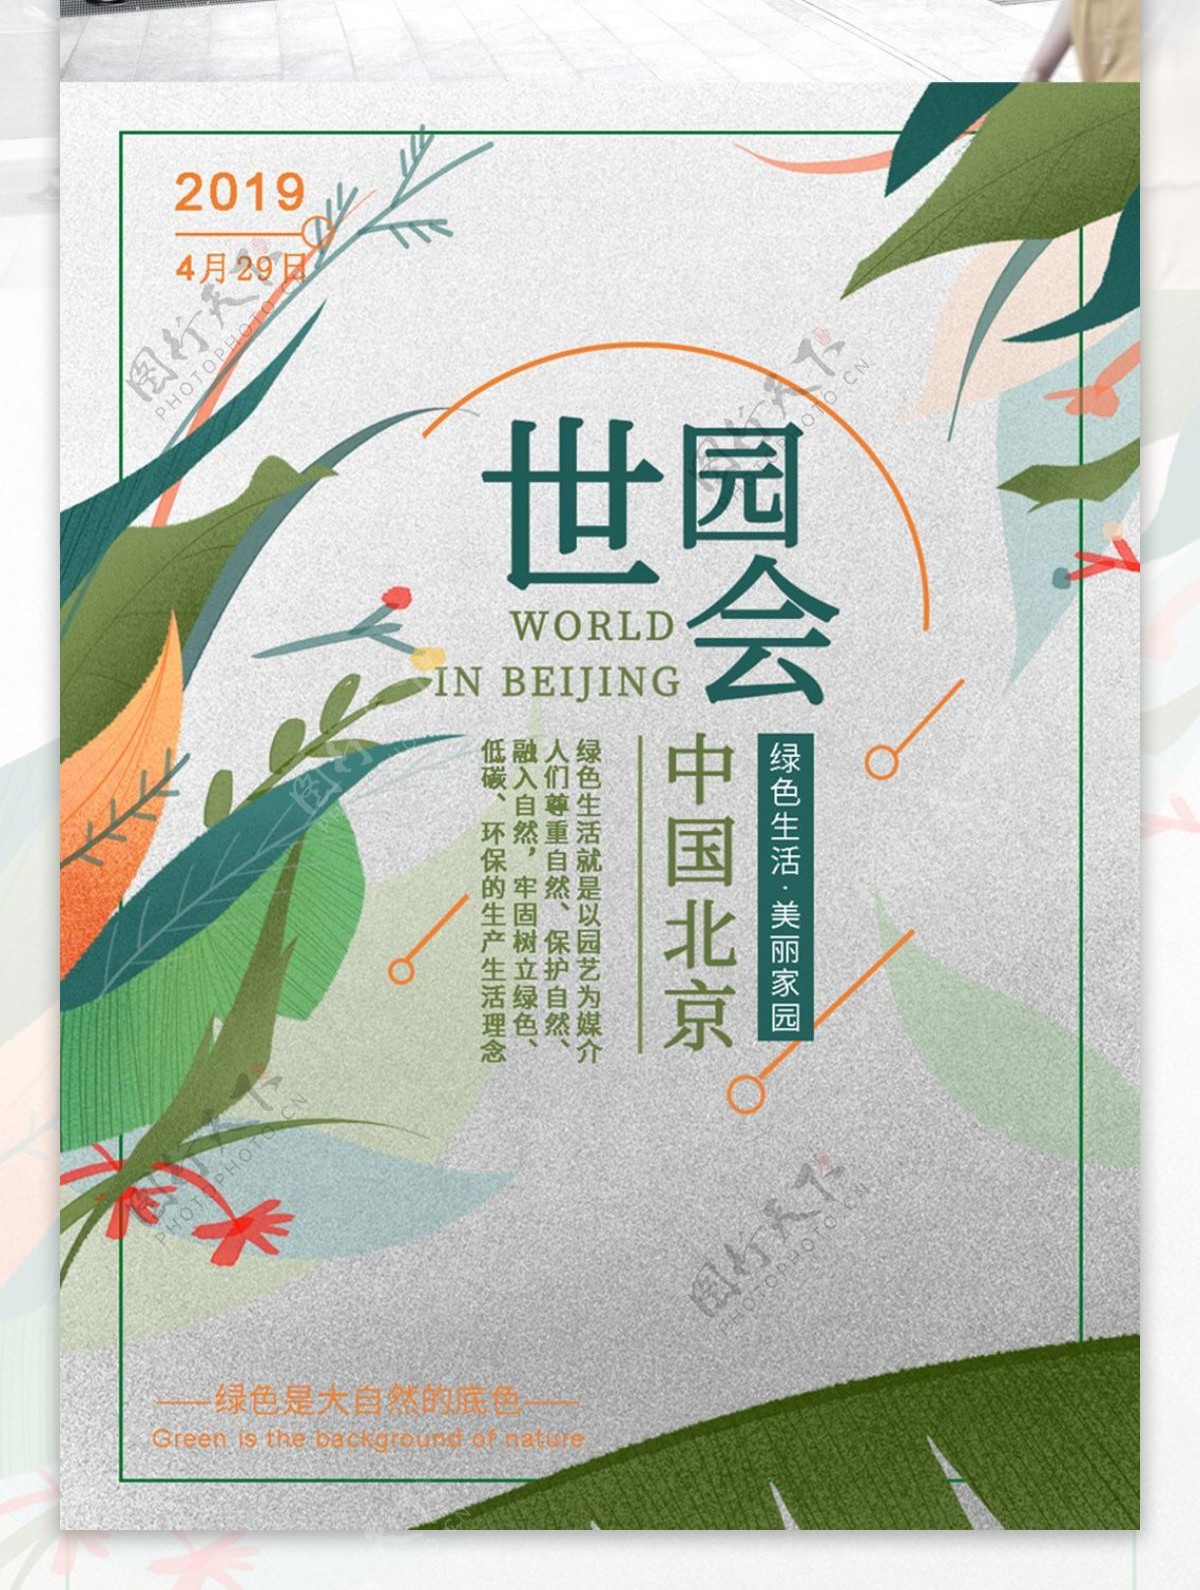 清新北京世界园艺博览会海报